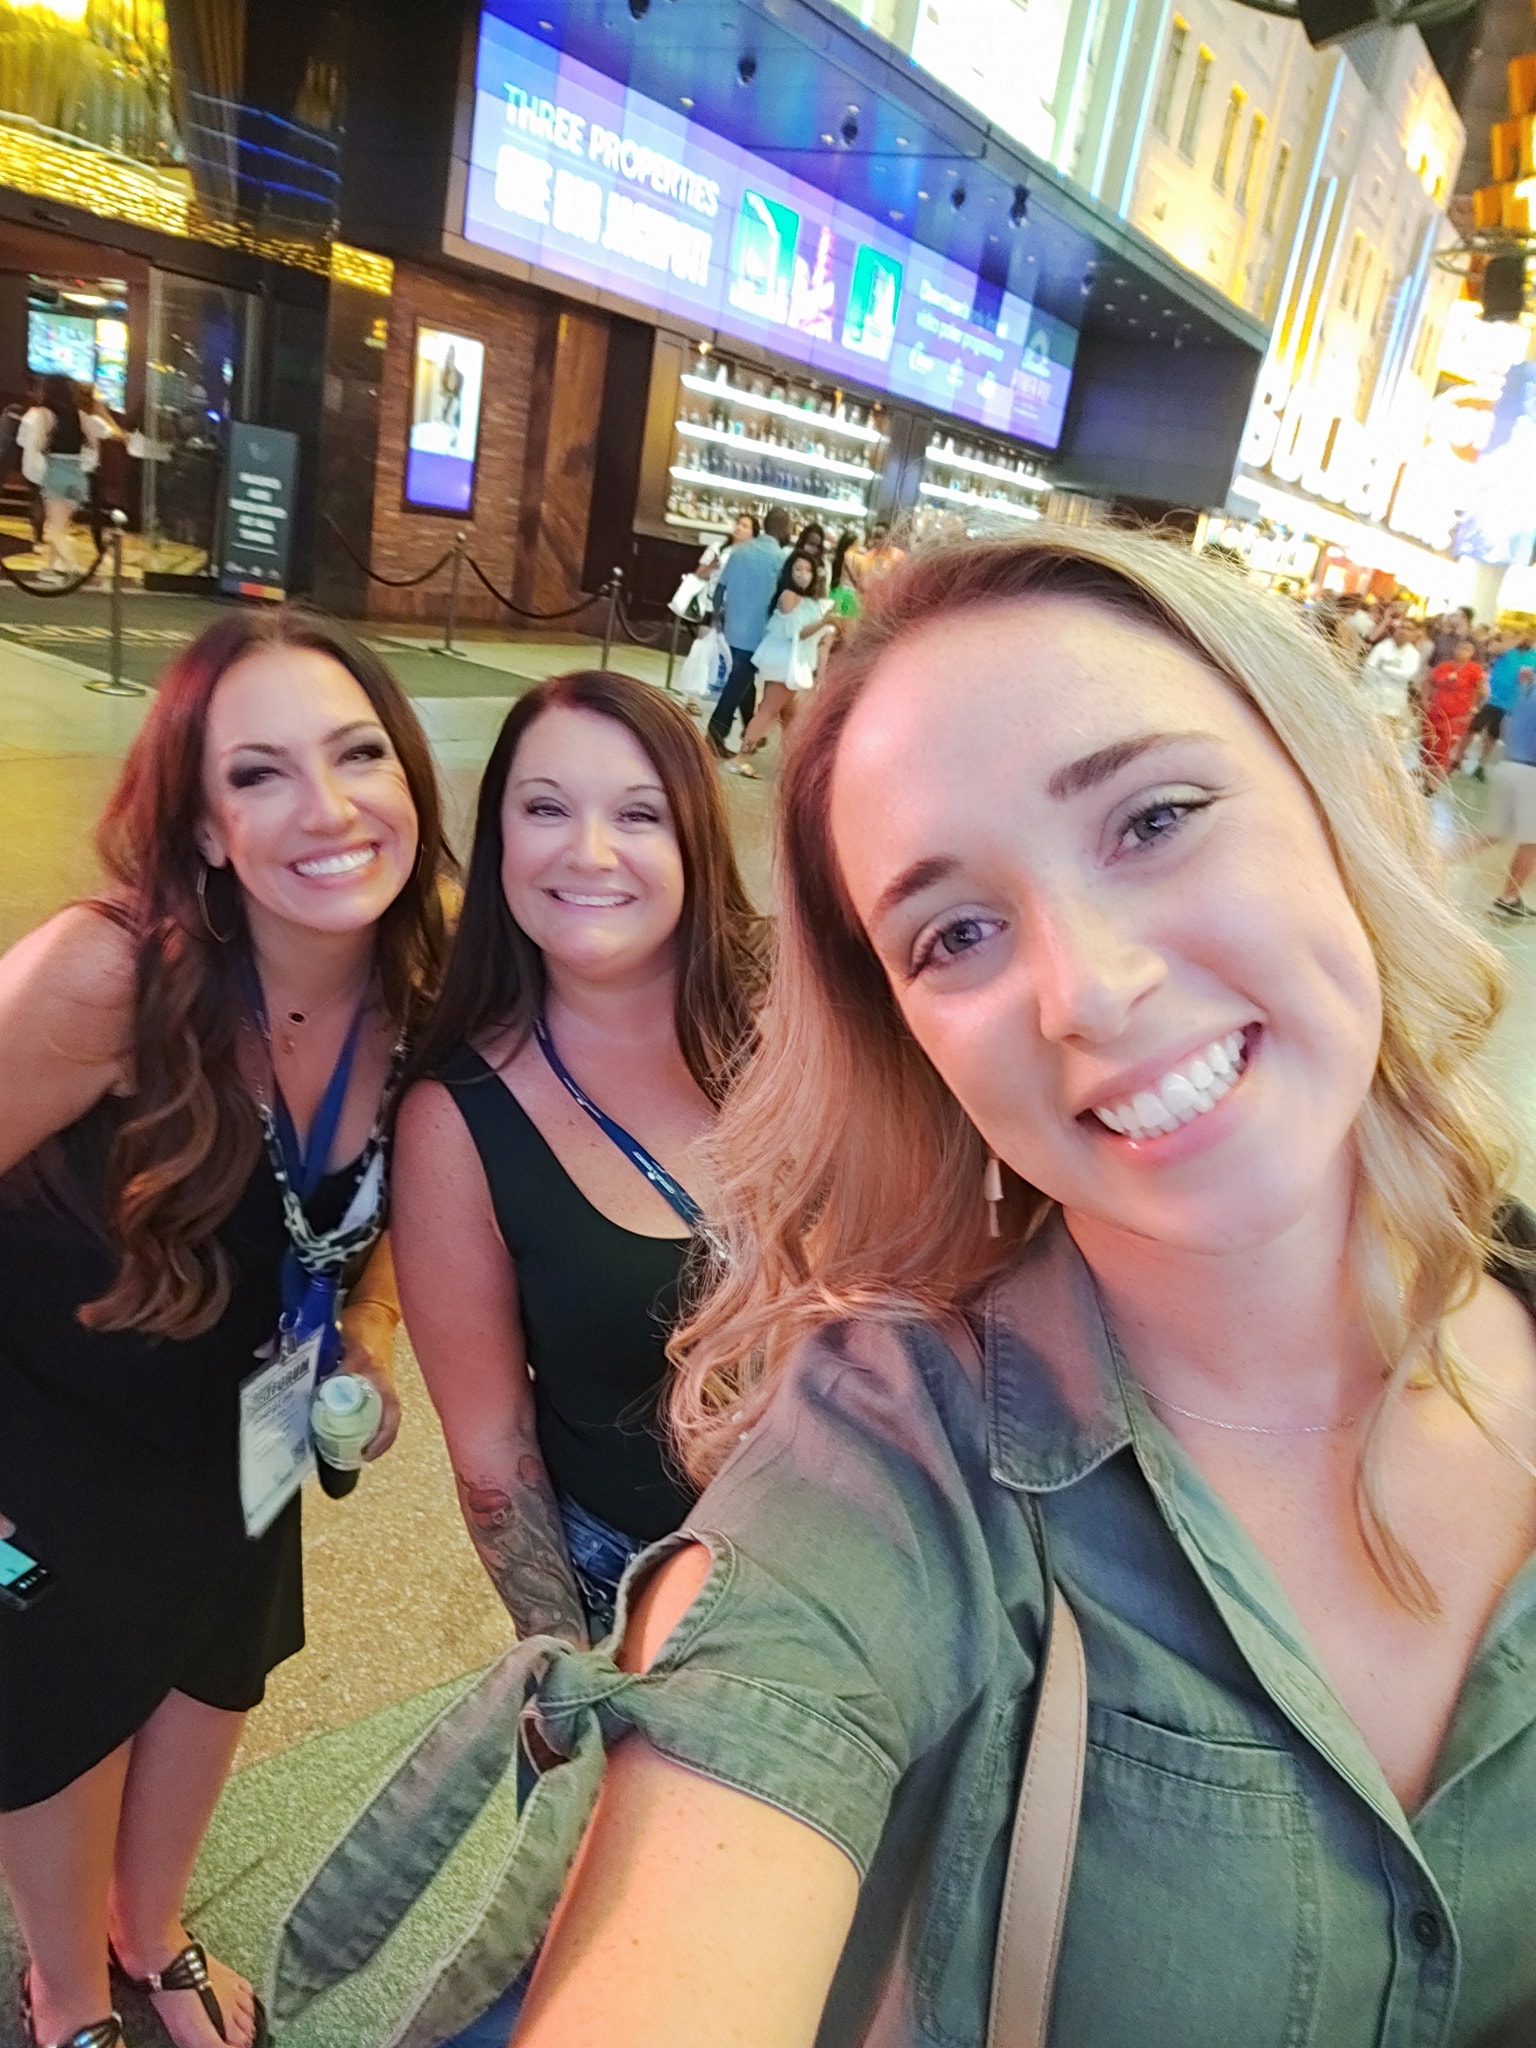 Las Vegas Travel Agent Forum 2021